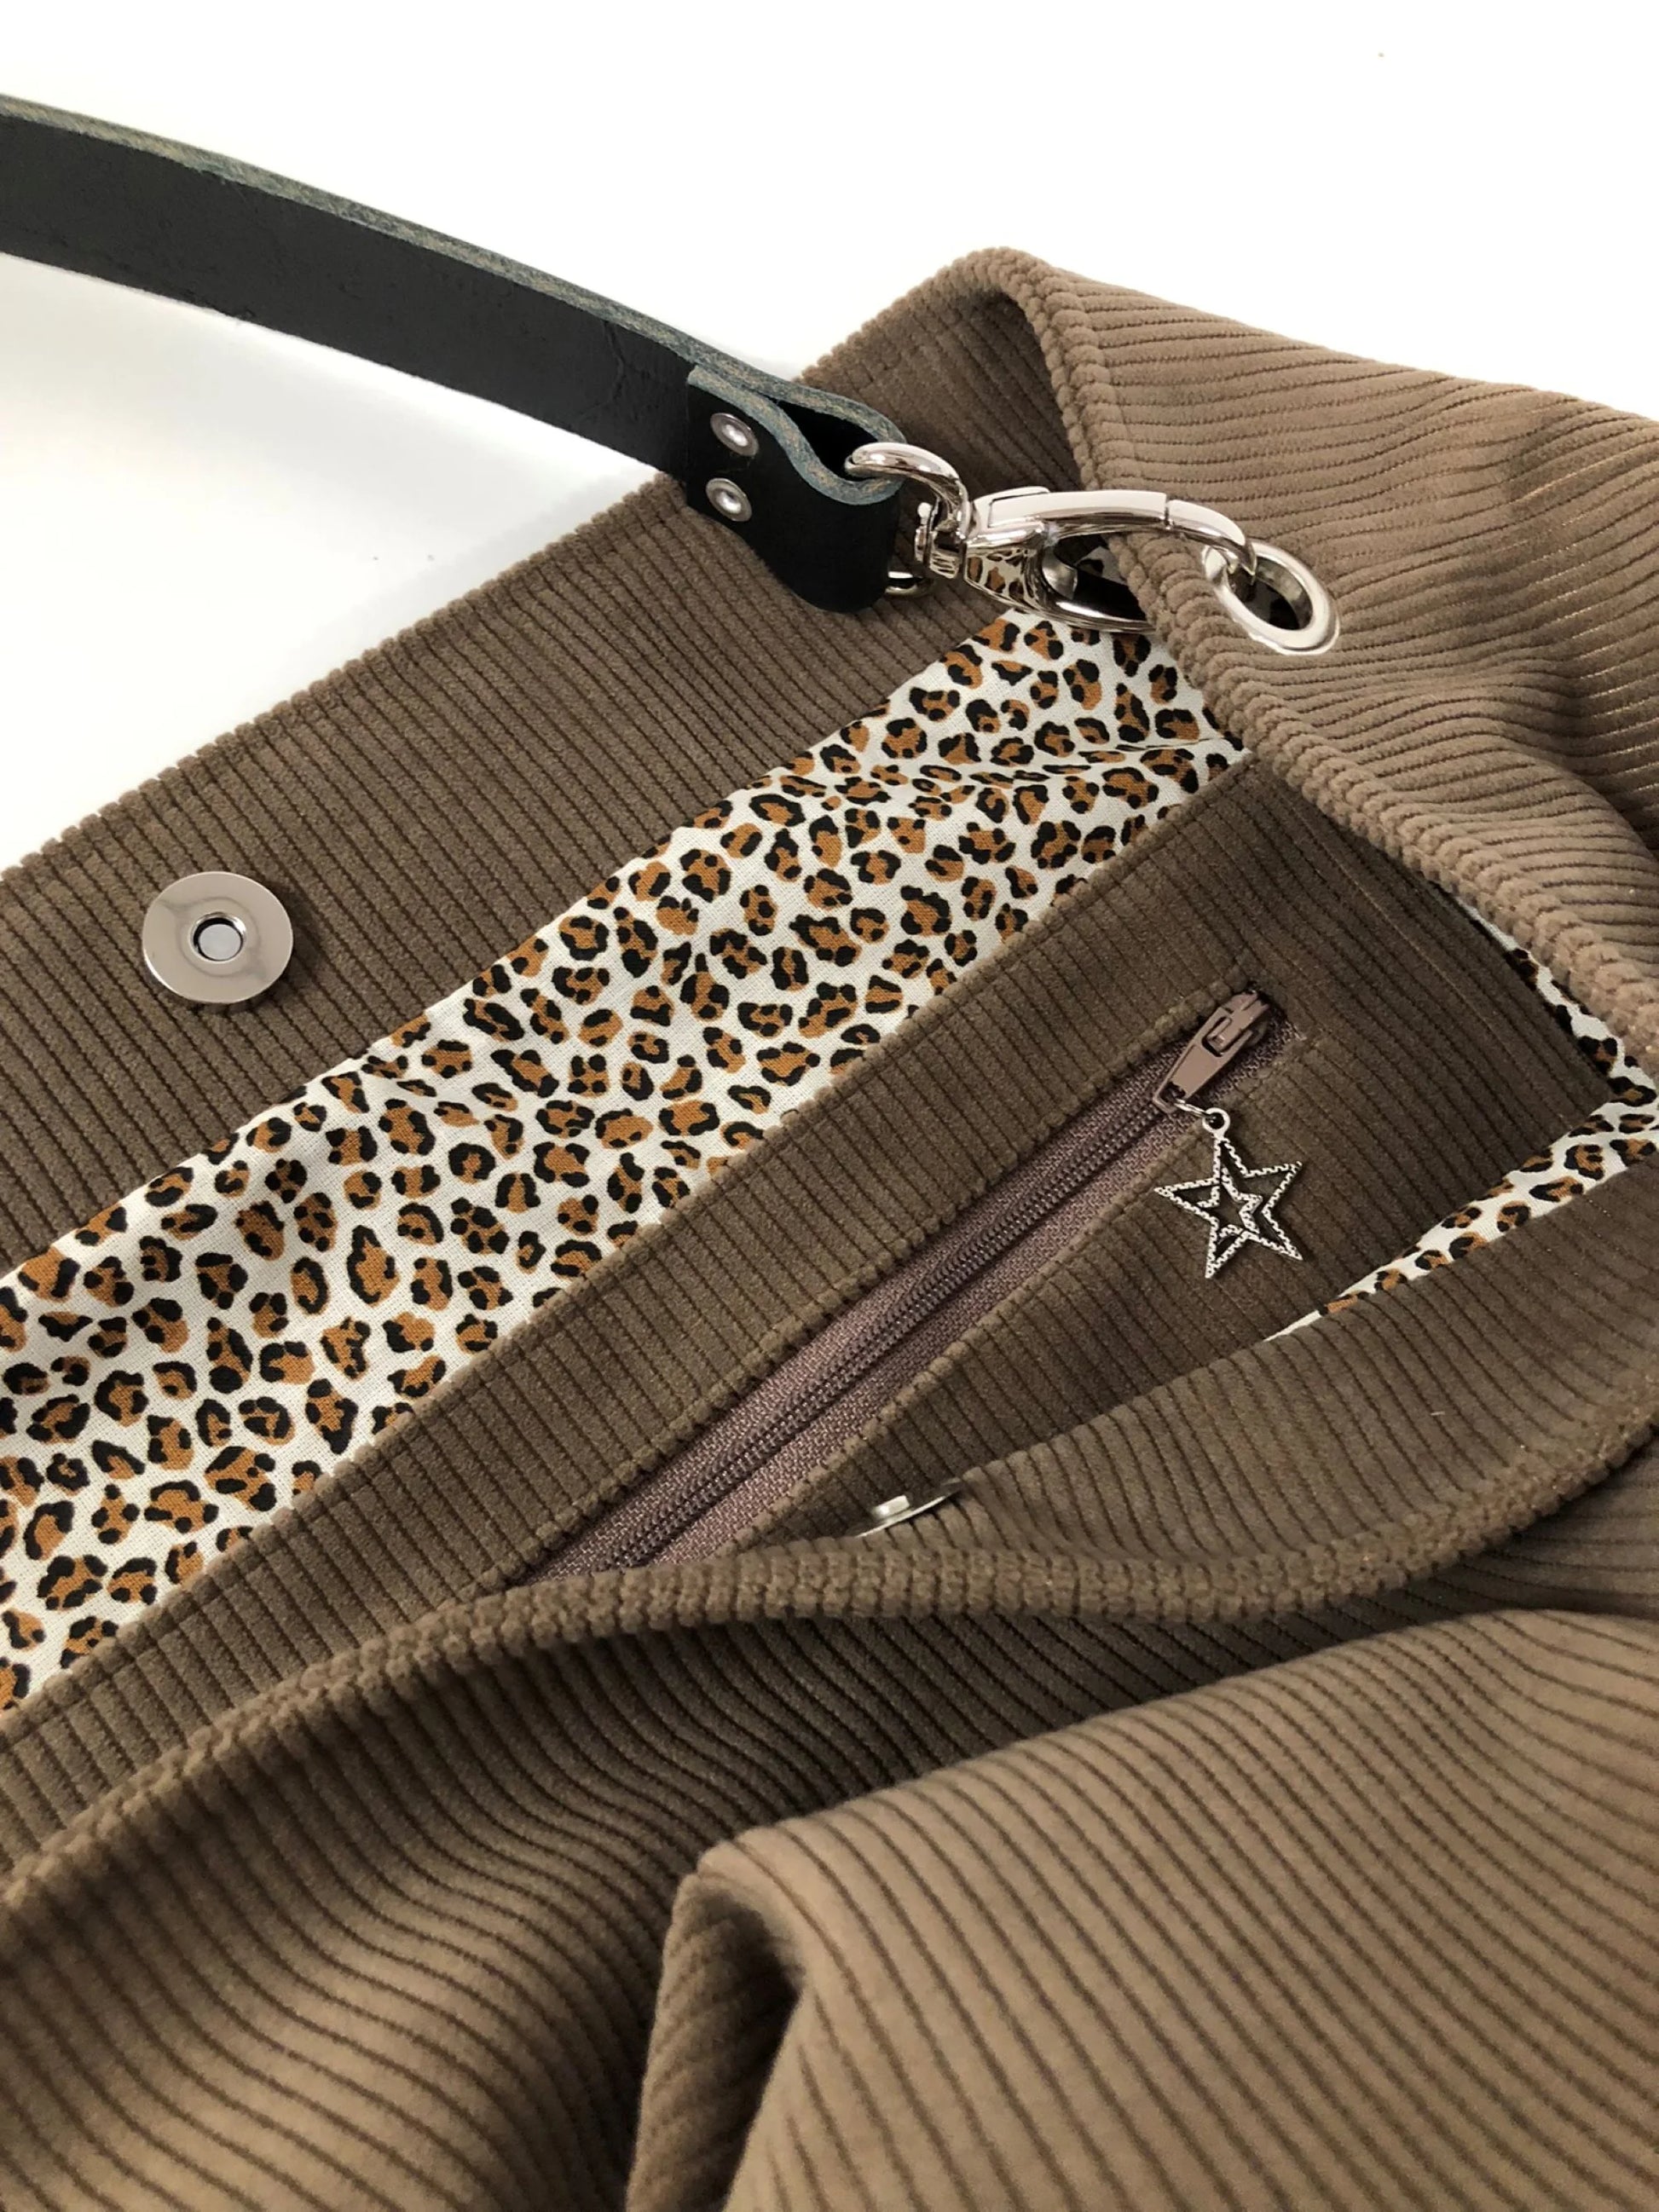 la poche intérieure zippée du sac hobo en velours cotelé marron chamois et son anse en cuir noir.